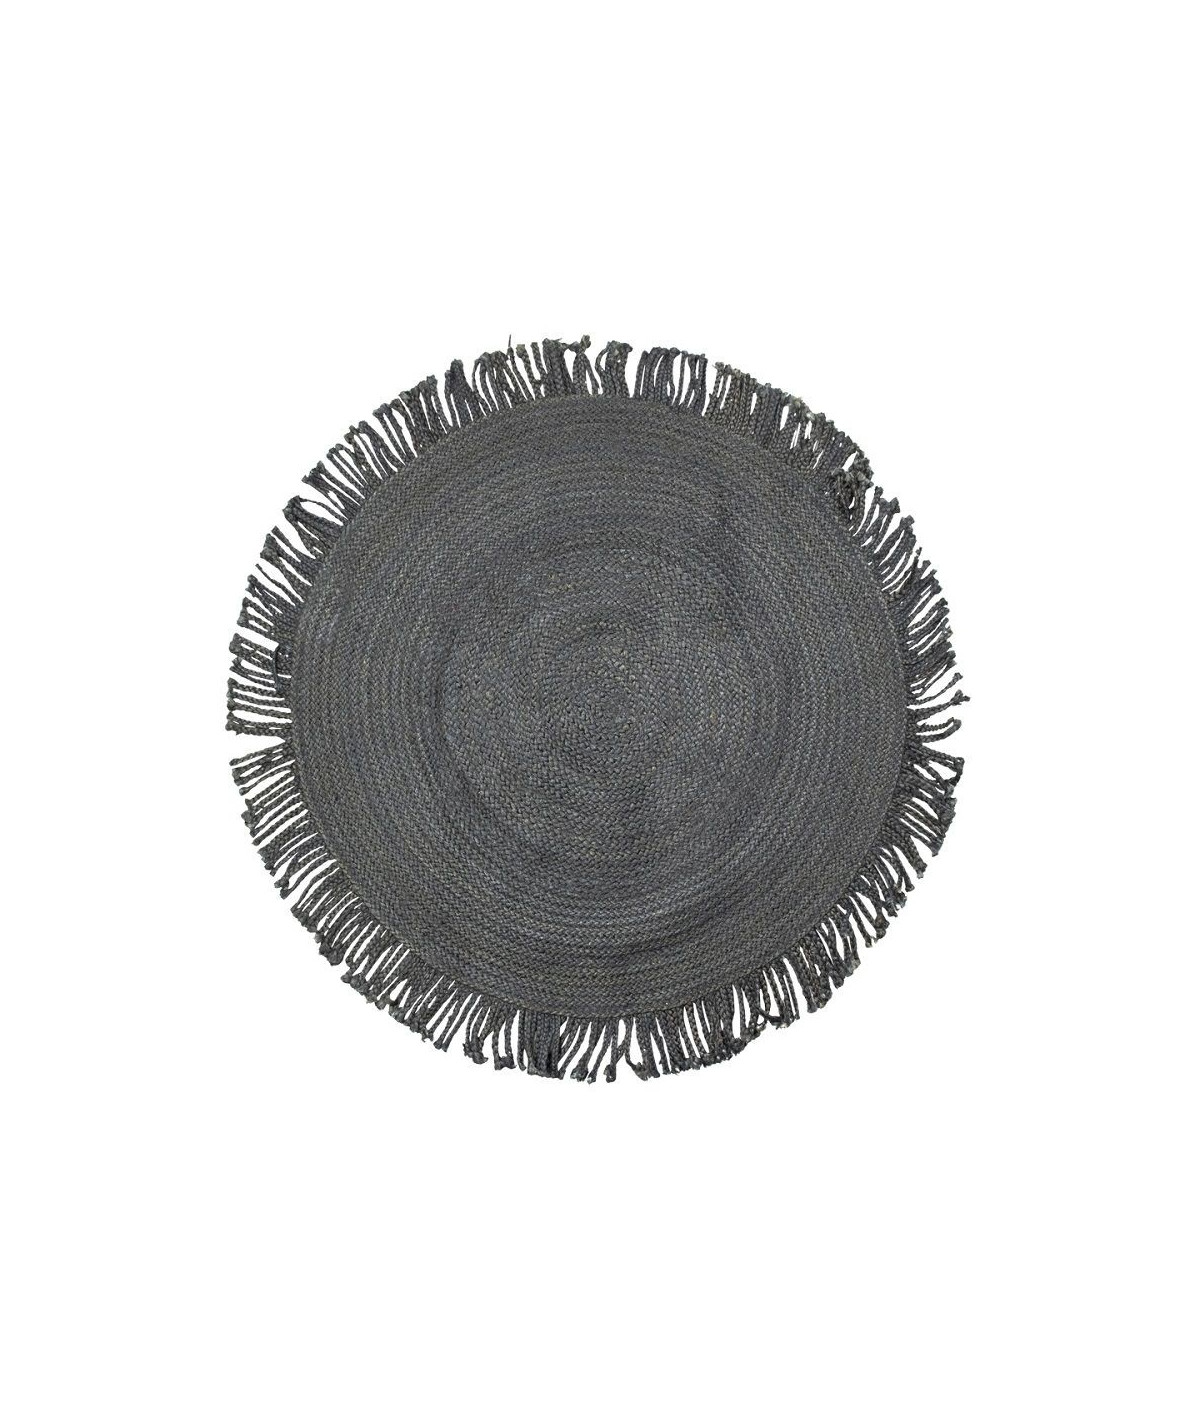 Tapis jute rond noir tressé avec franges Diam120cm - Ottawa |YESDEKO